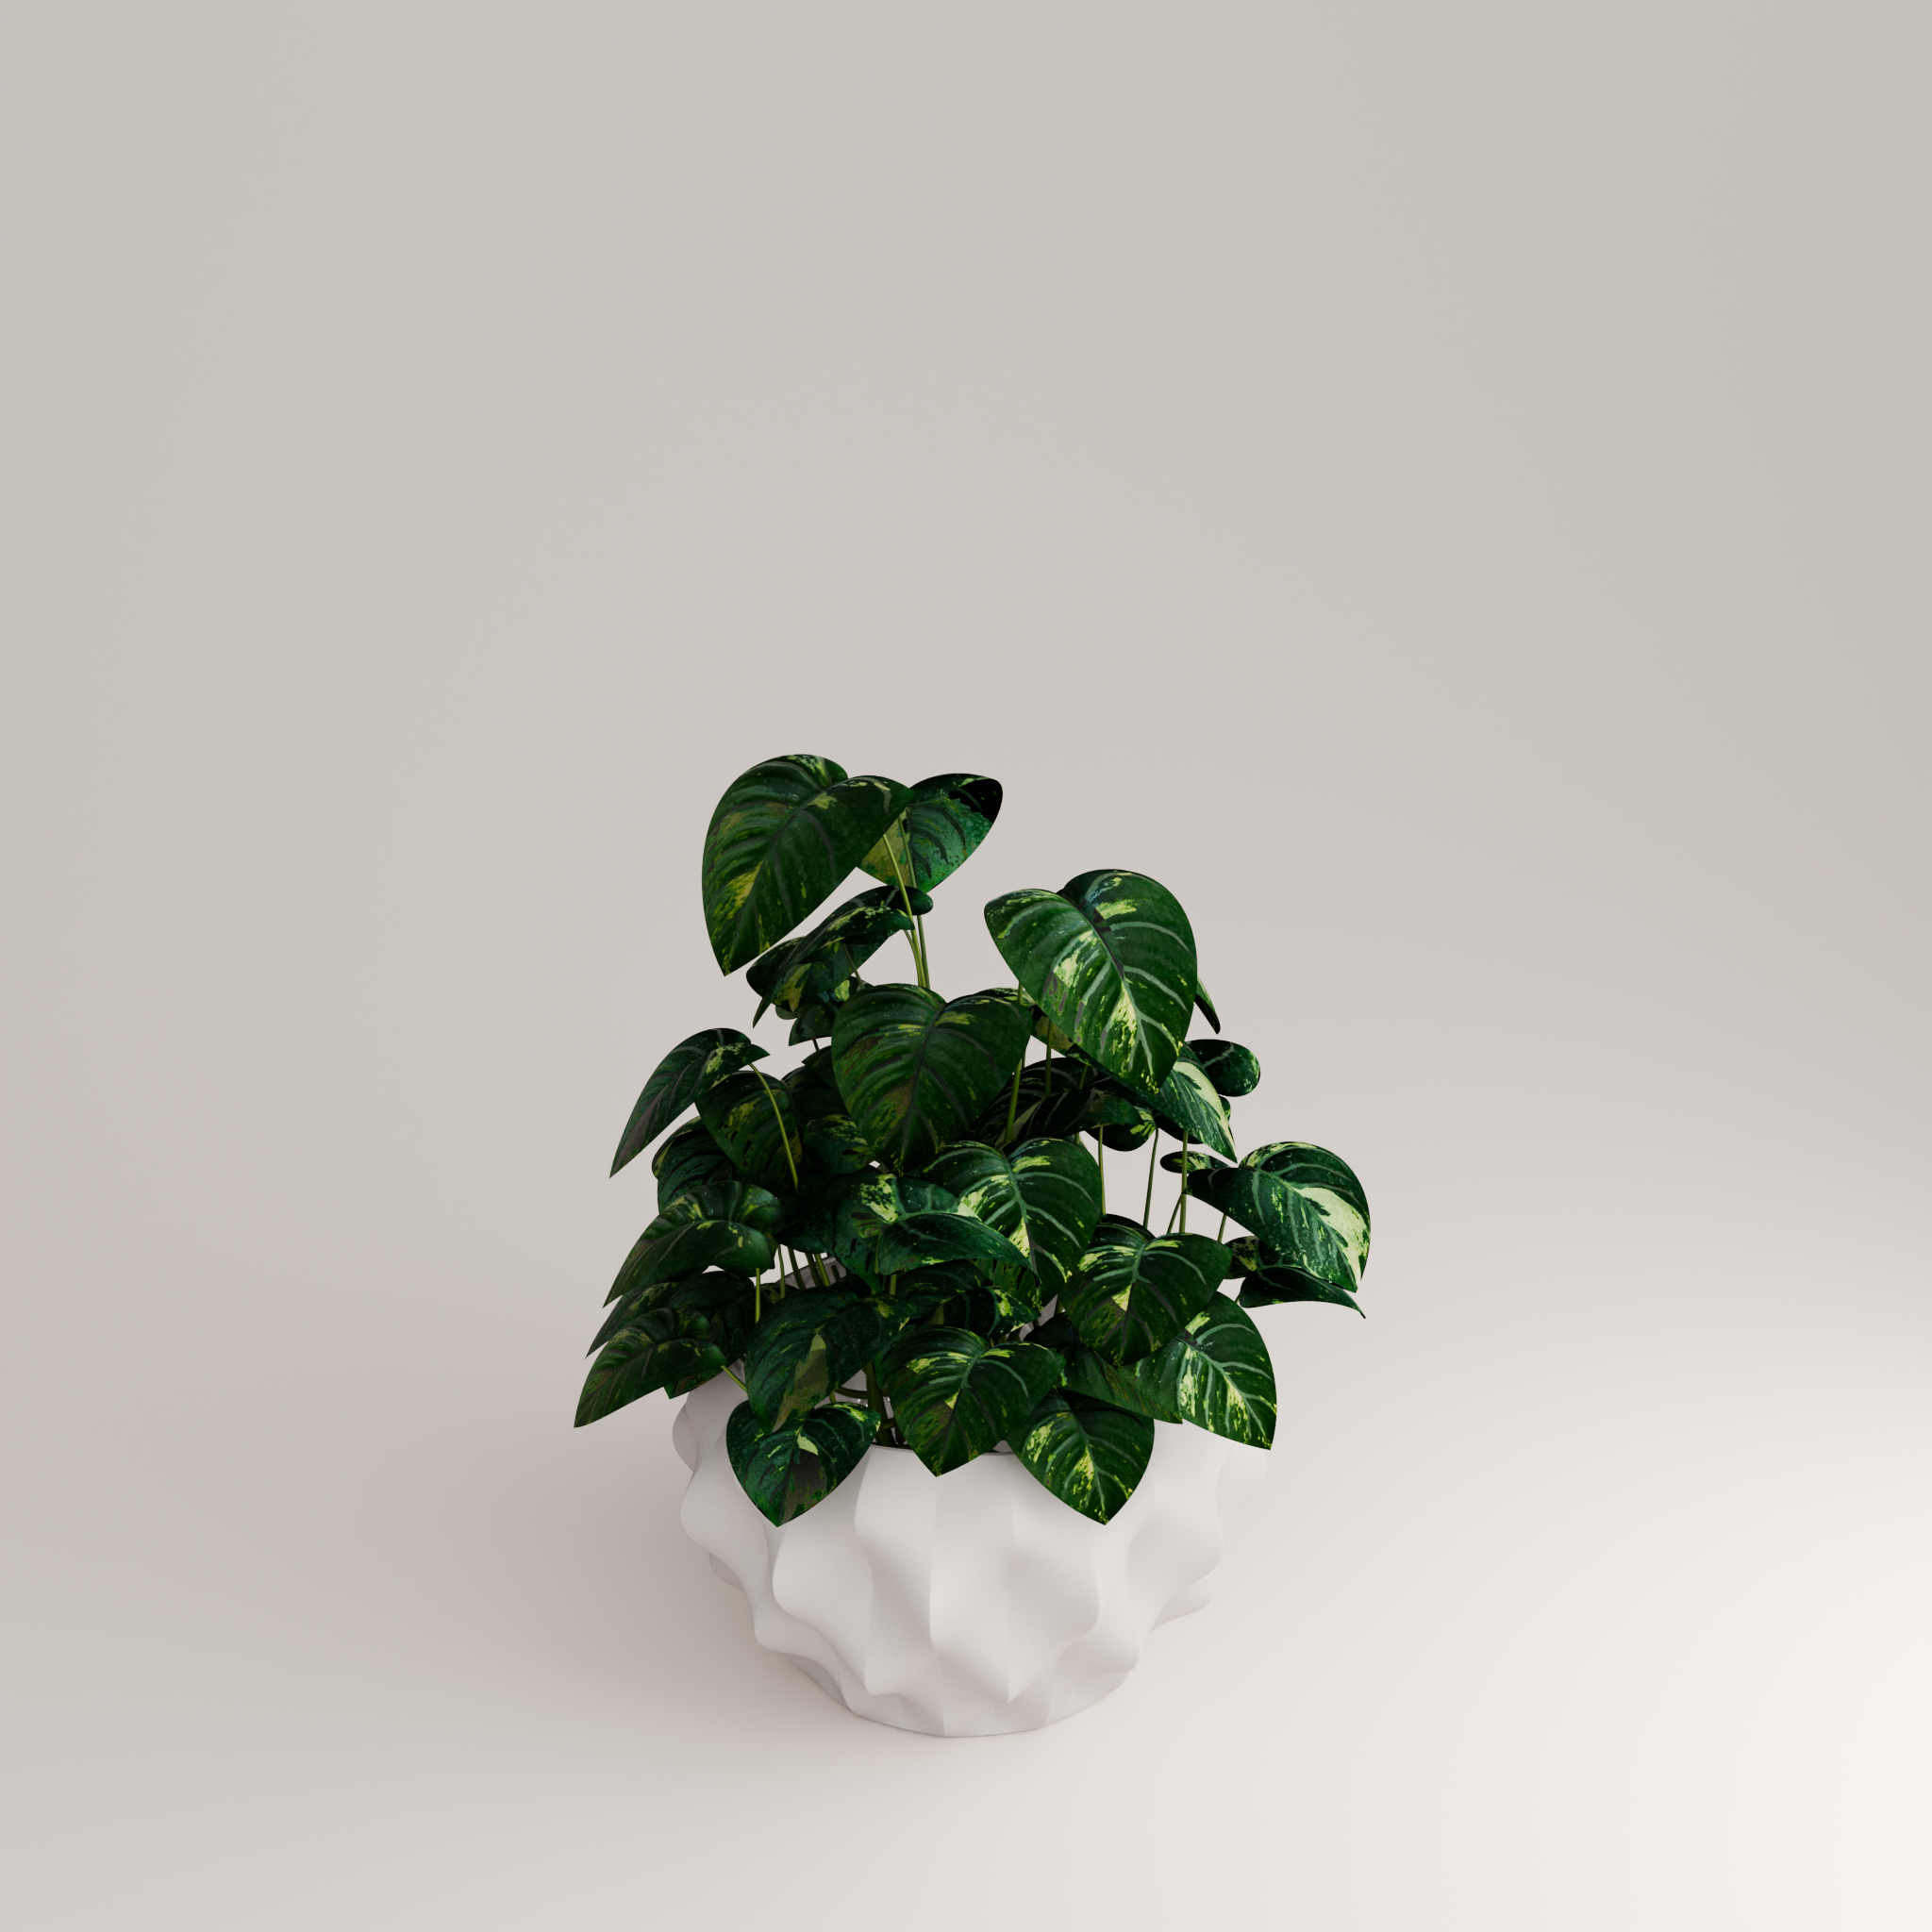 Plissan GG Porcelain Pot (h20 cm) - Holaria